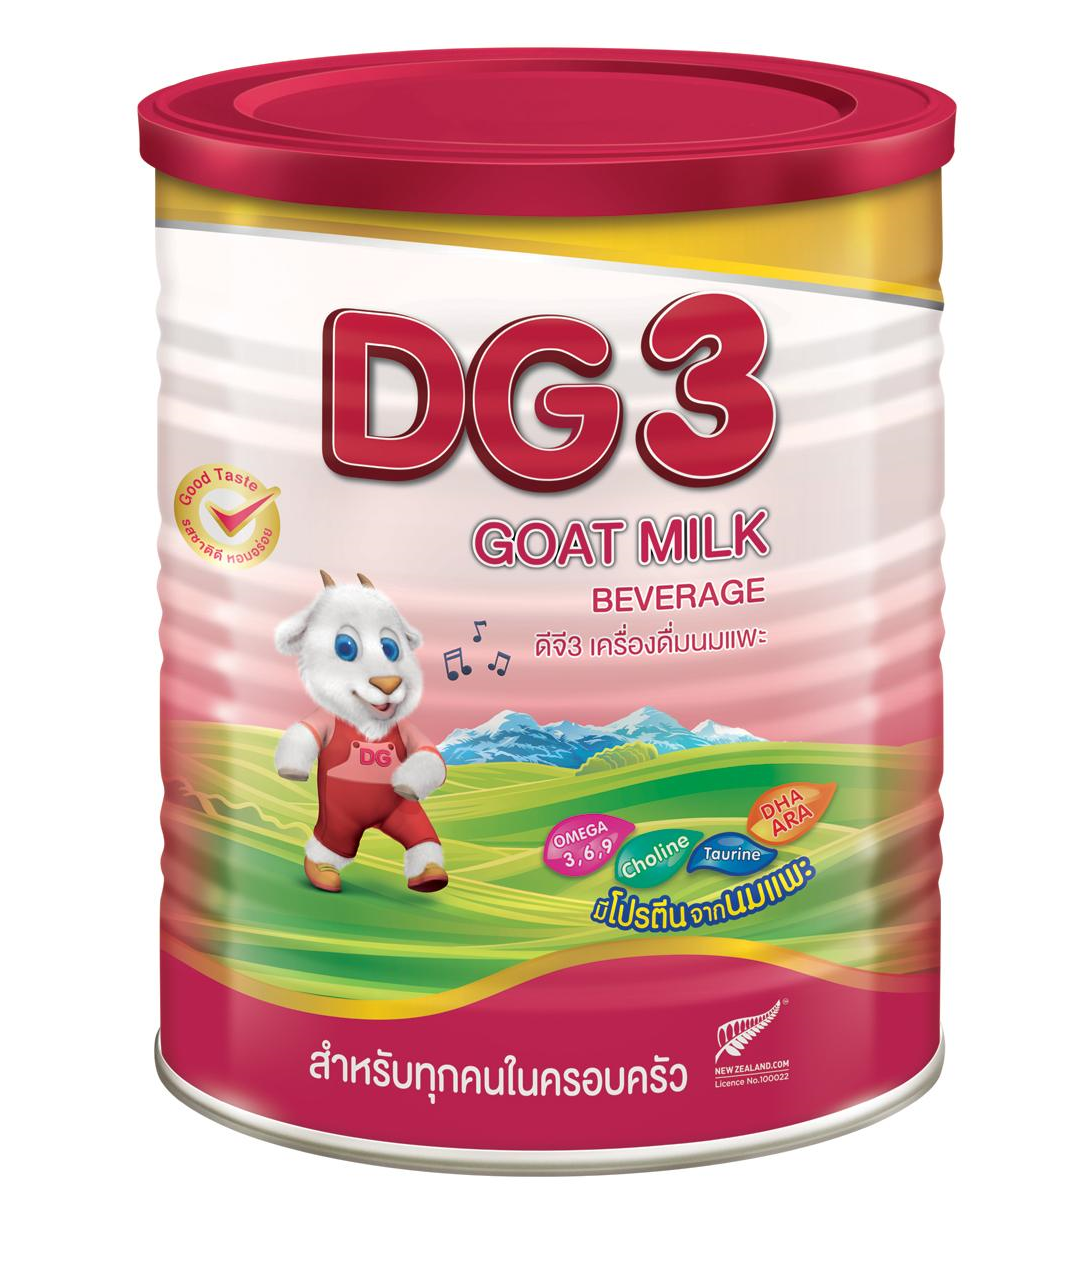 มุมมองเพิ่มเติมของสินค้า DG3 นมแพะ ดีจี3 แอดวานซ์  สำหรับเด็ก 1 ปีขึ้นไป และทุกคนในครอบครัว ขนาด 400 กรัม